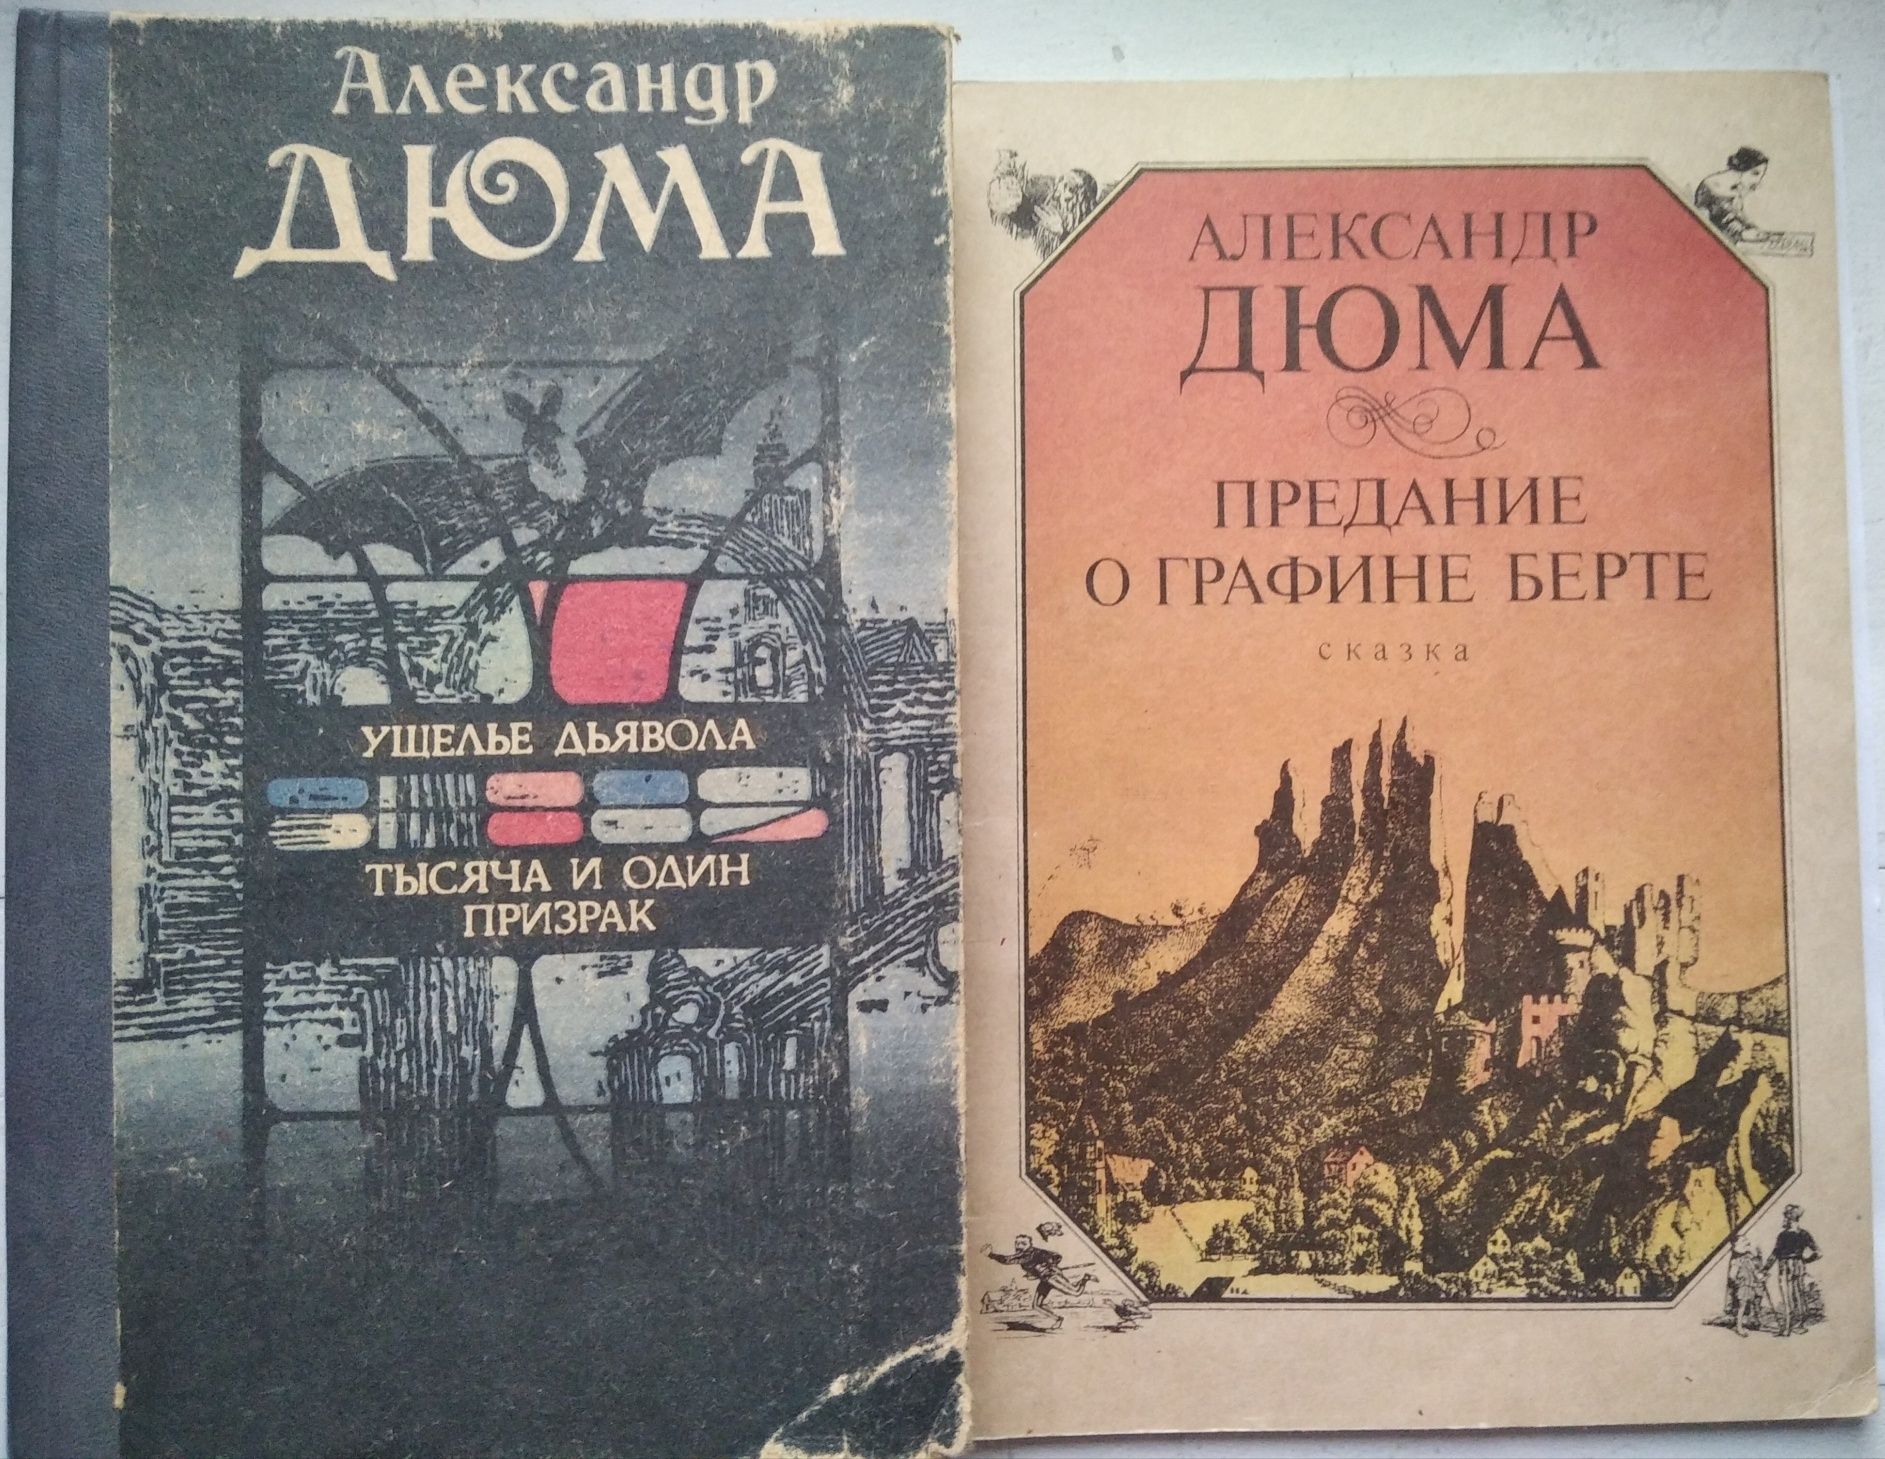 Книги "Библиотека фантастики" (Рэй Брэдбери, Азимов), Александр Дюма